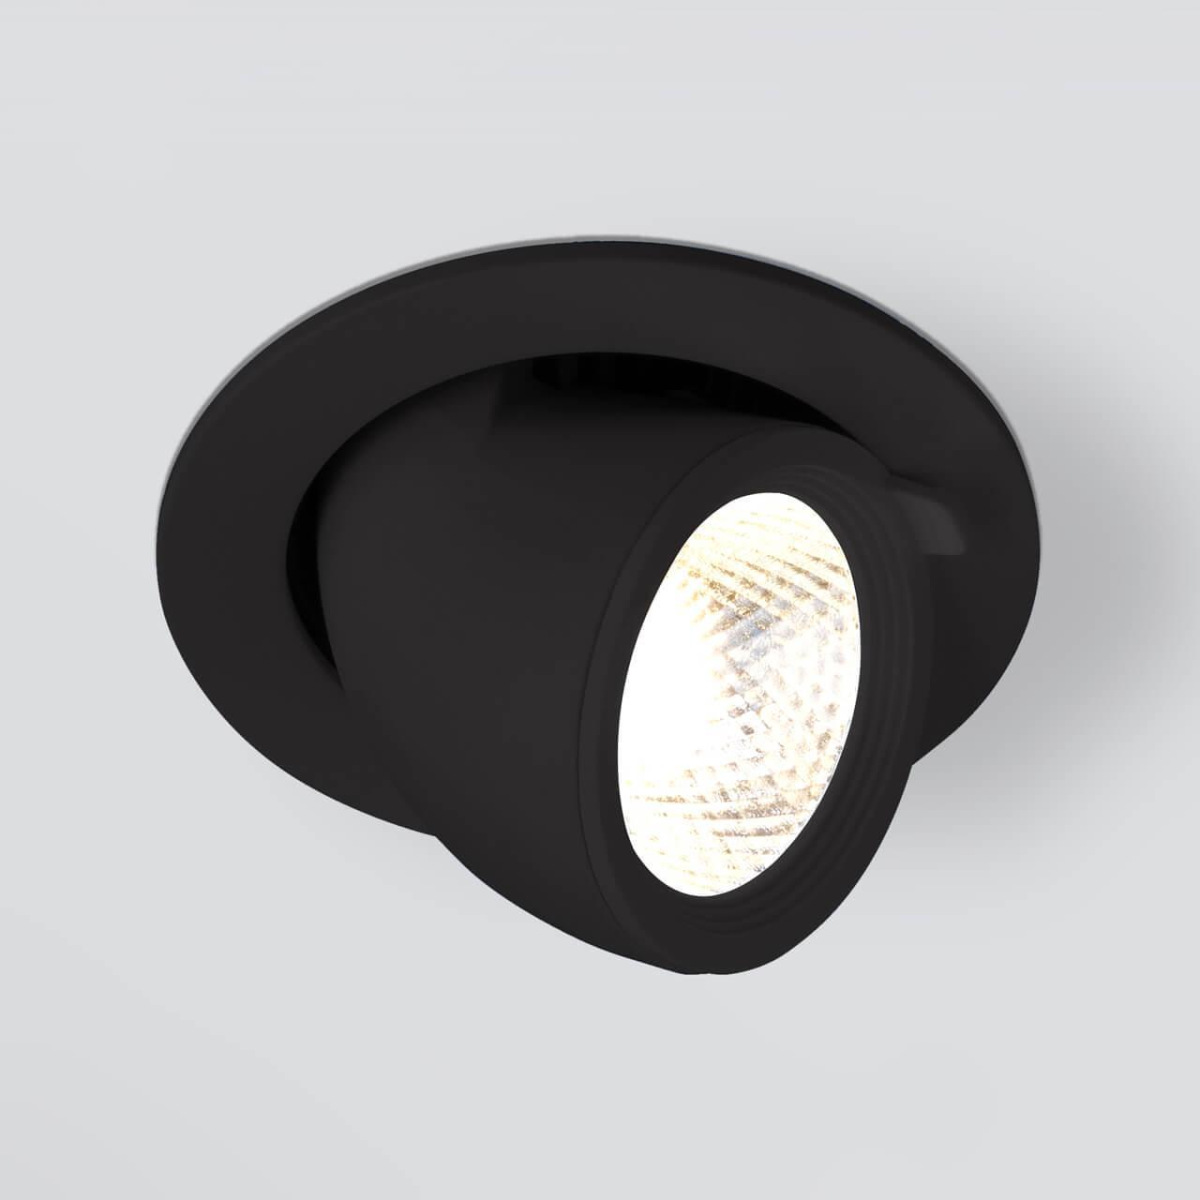 Встраиваемый светодиодный светильник Elektrostandard 9918 LED 9W 4200K черный 4690389162428 встраиваемая варочная панель комбинированная bertazzoni p755cprone черный